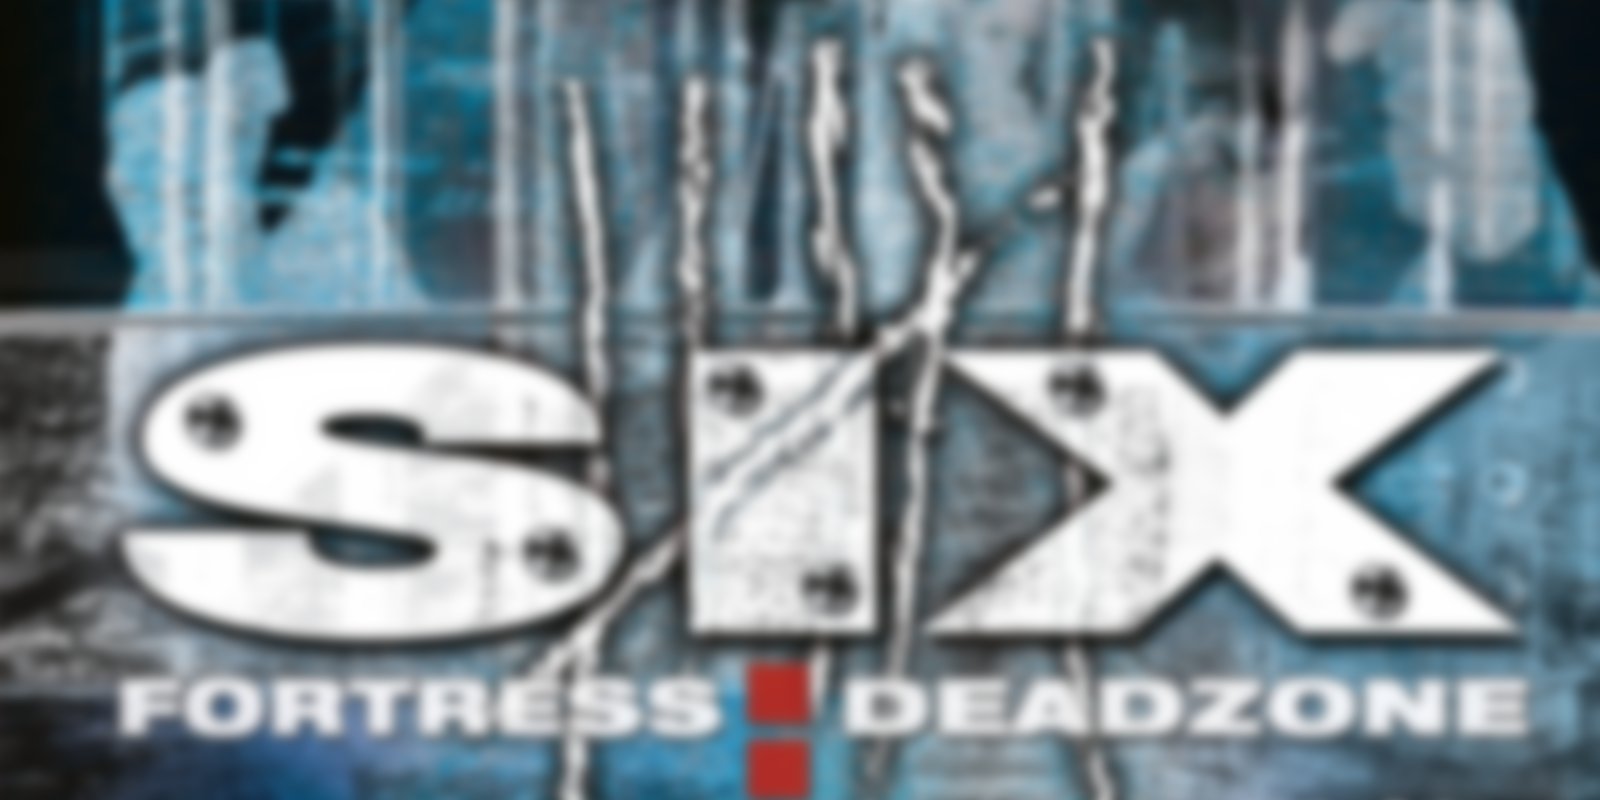 Six - Fortress: Deadzone